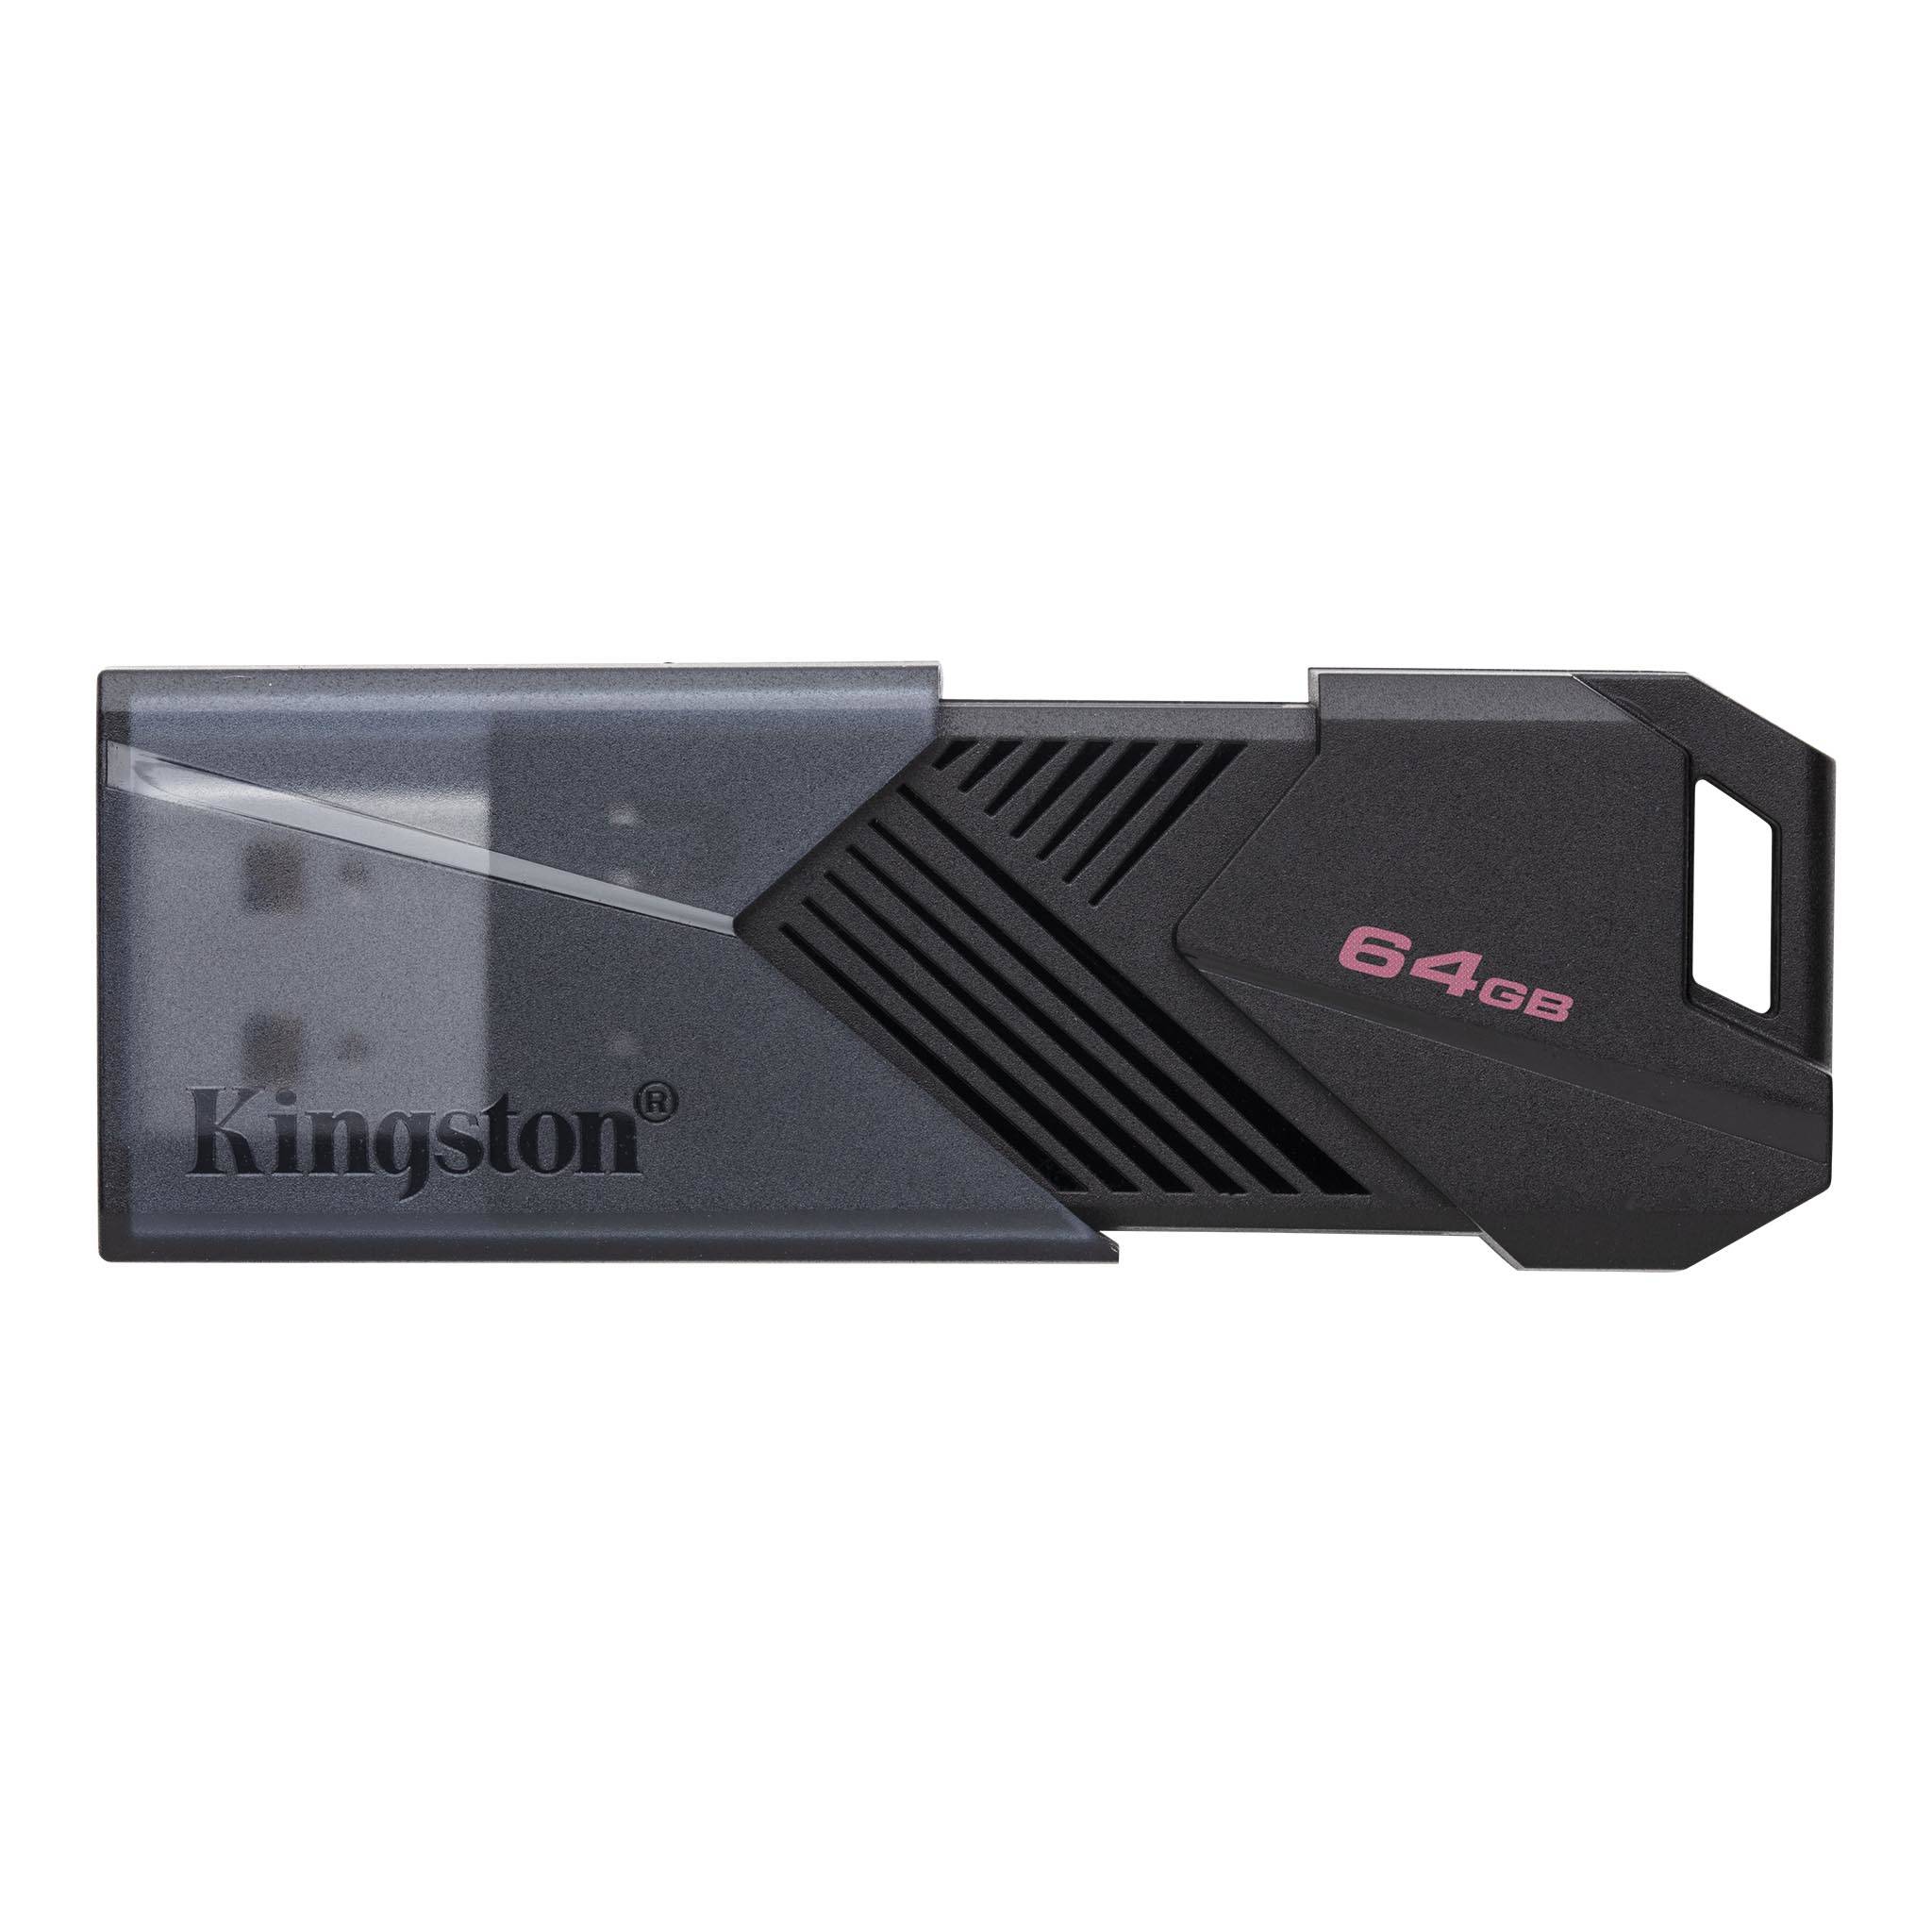 USB Kingston 3.2 Gen 1 DataTraveler Exodia Onyx USB Flash Drive 64G / 128G / 256G - Hàng Chính Hãng